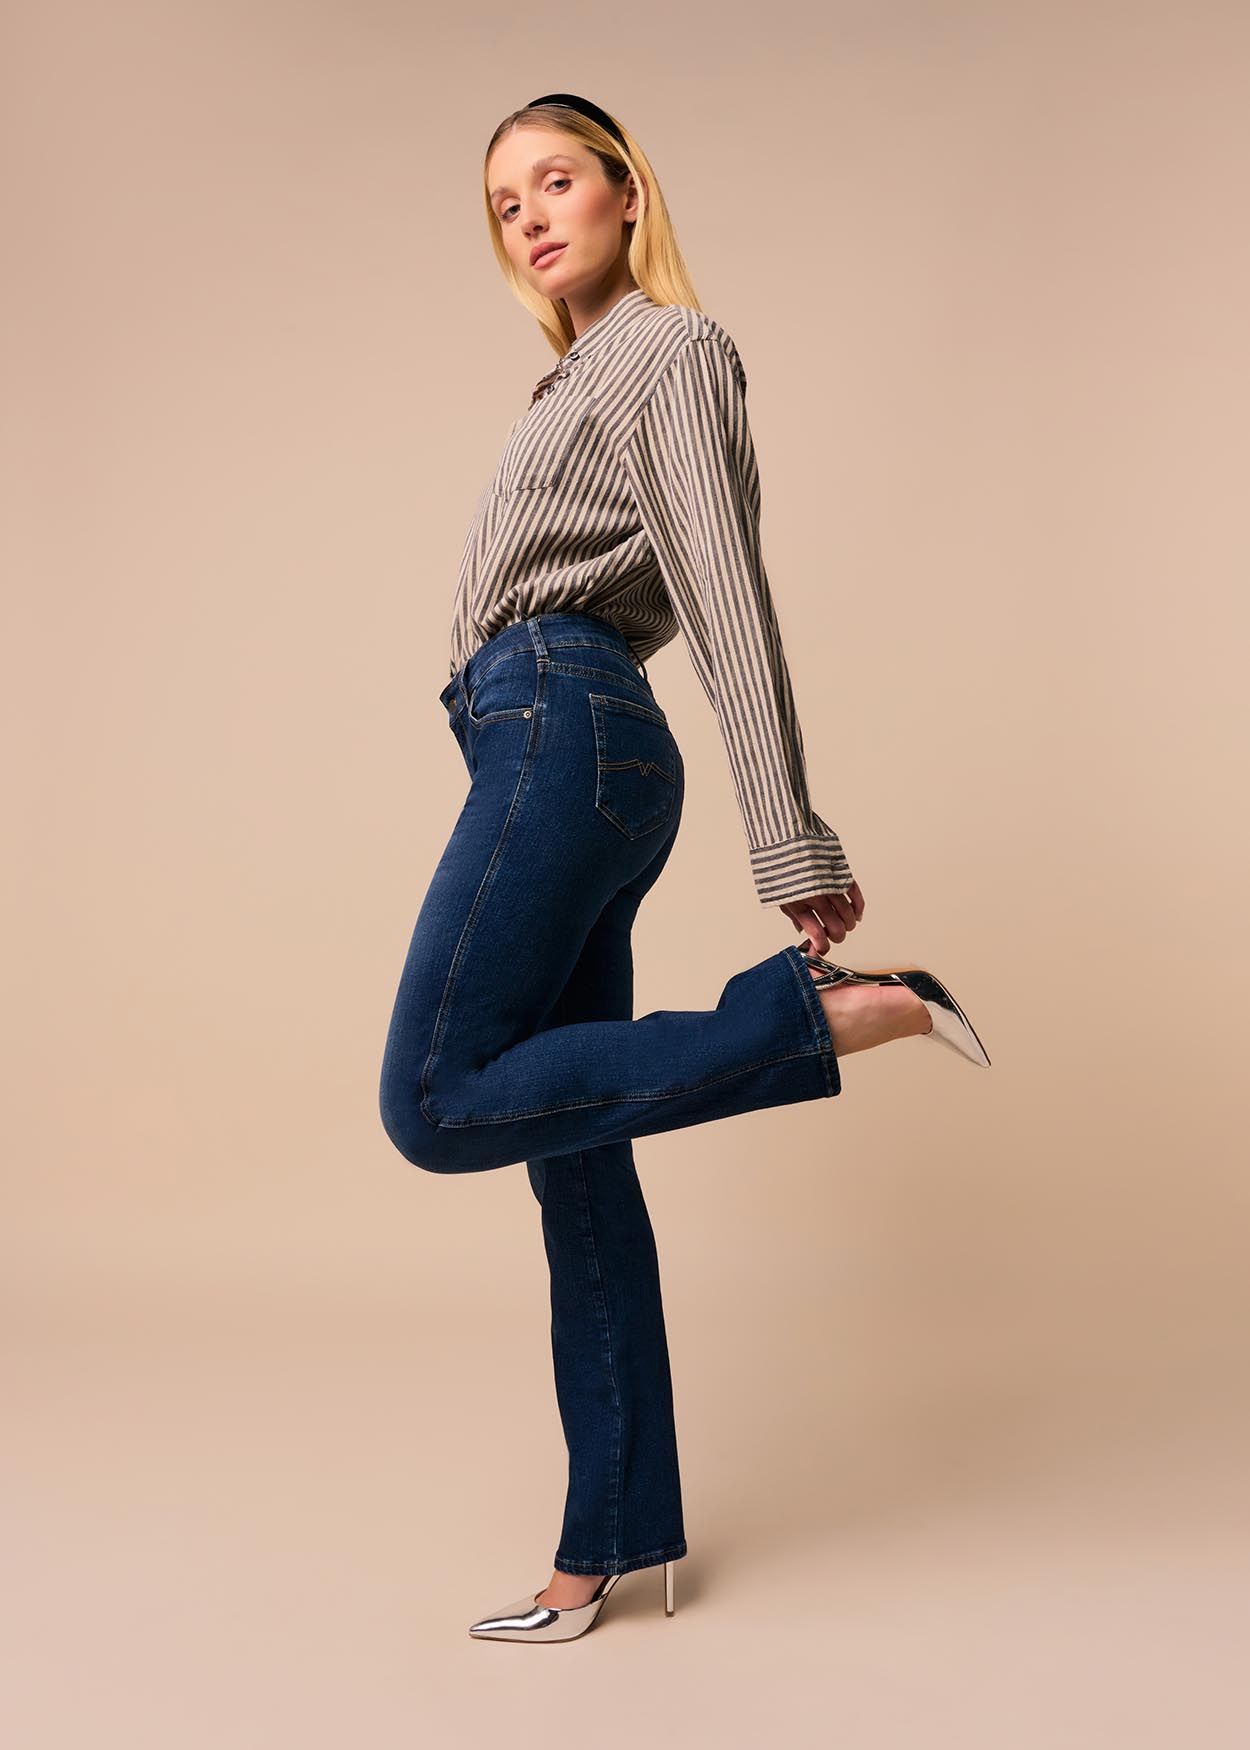 CLAUDIA KYRA - Jeans Taille Basse| Coupe Droite  | Taille en pouces Cimarron